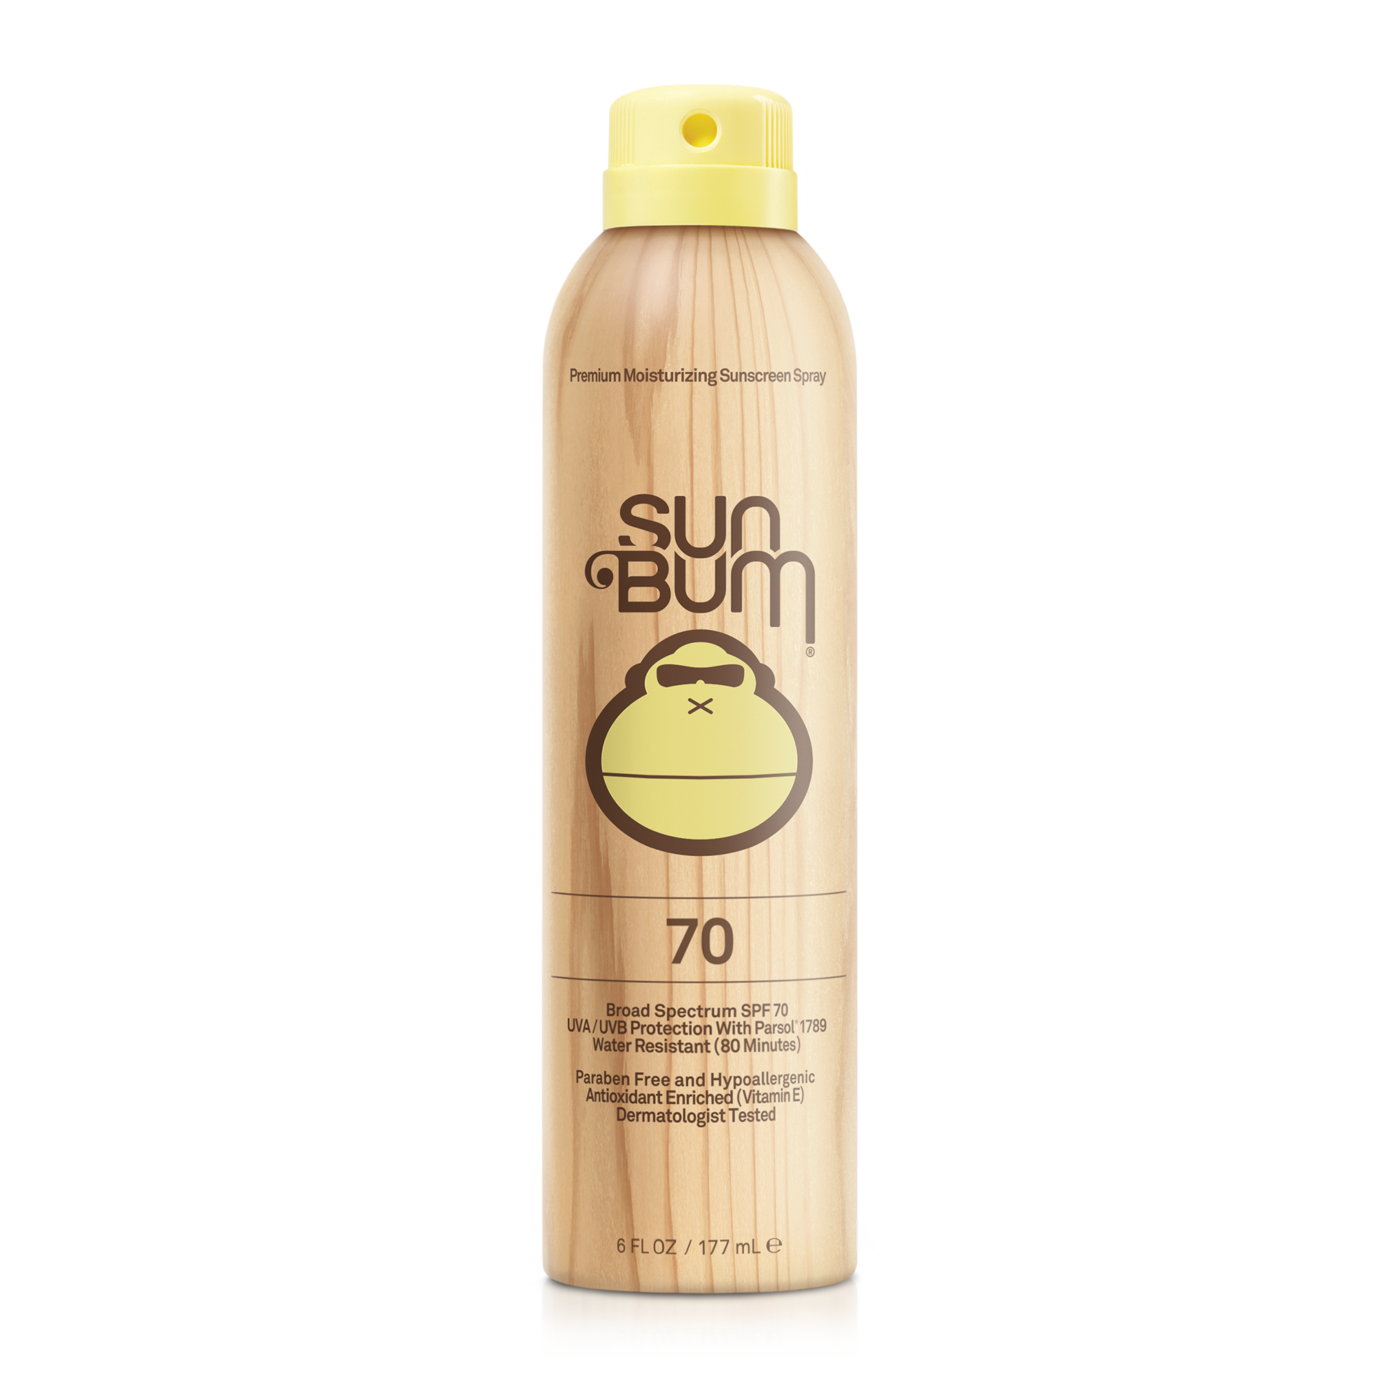 Sun Bum Sunscreen Spray 70 SPF